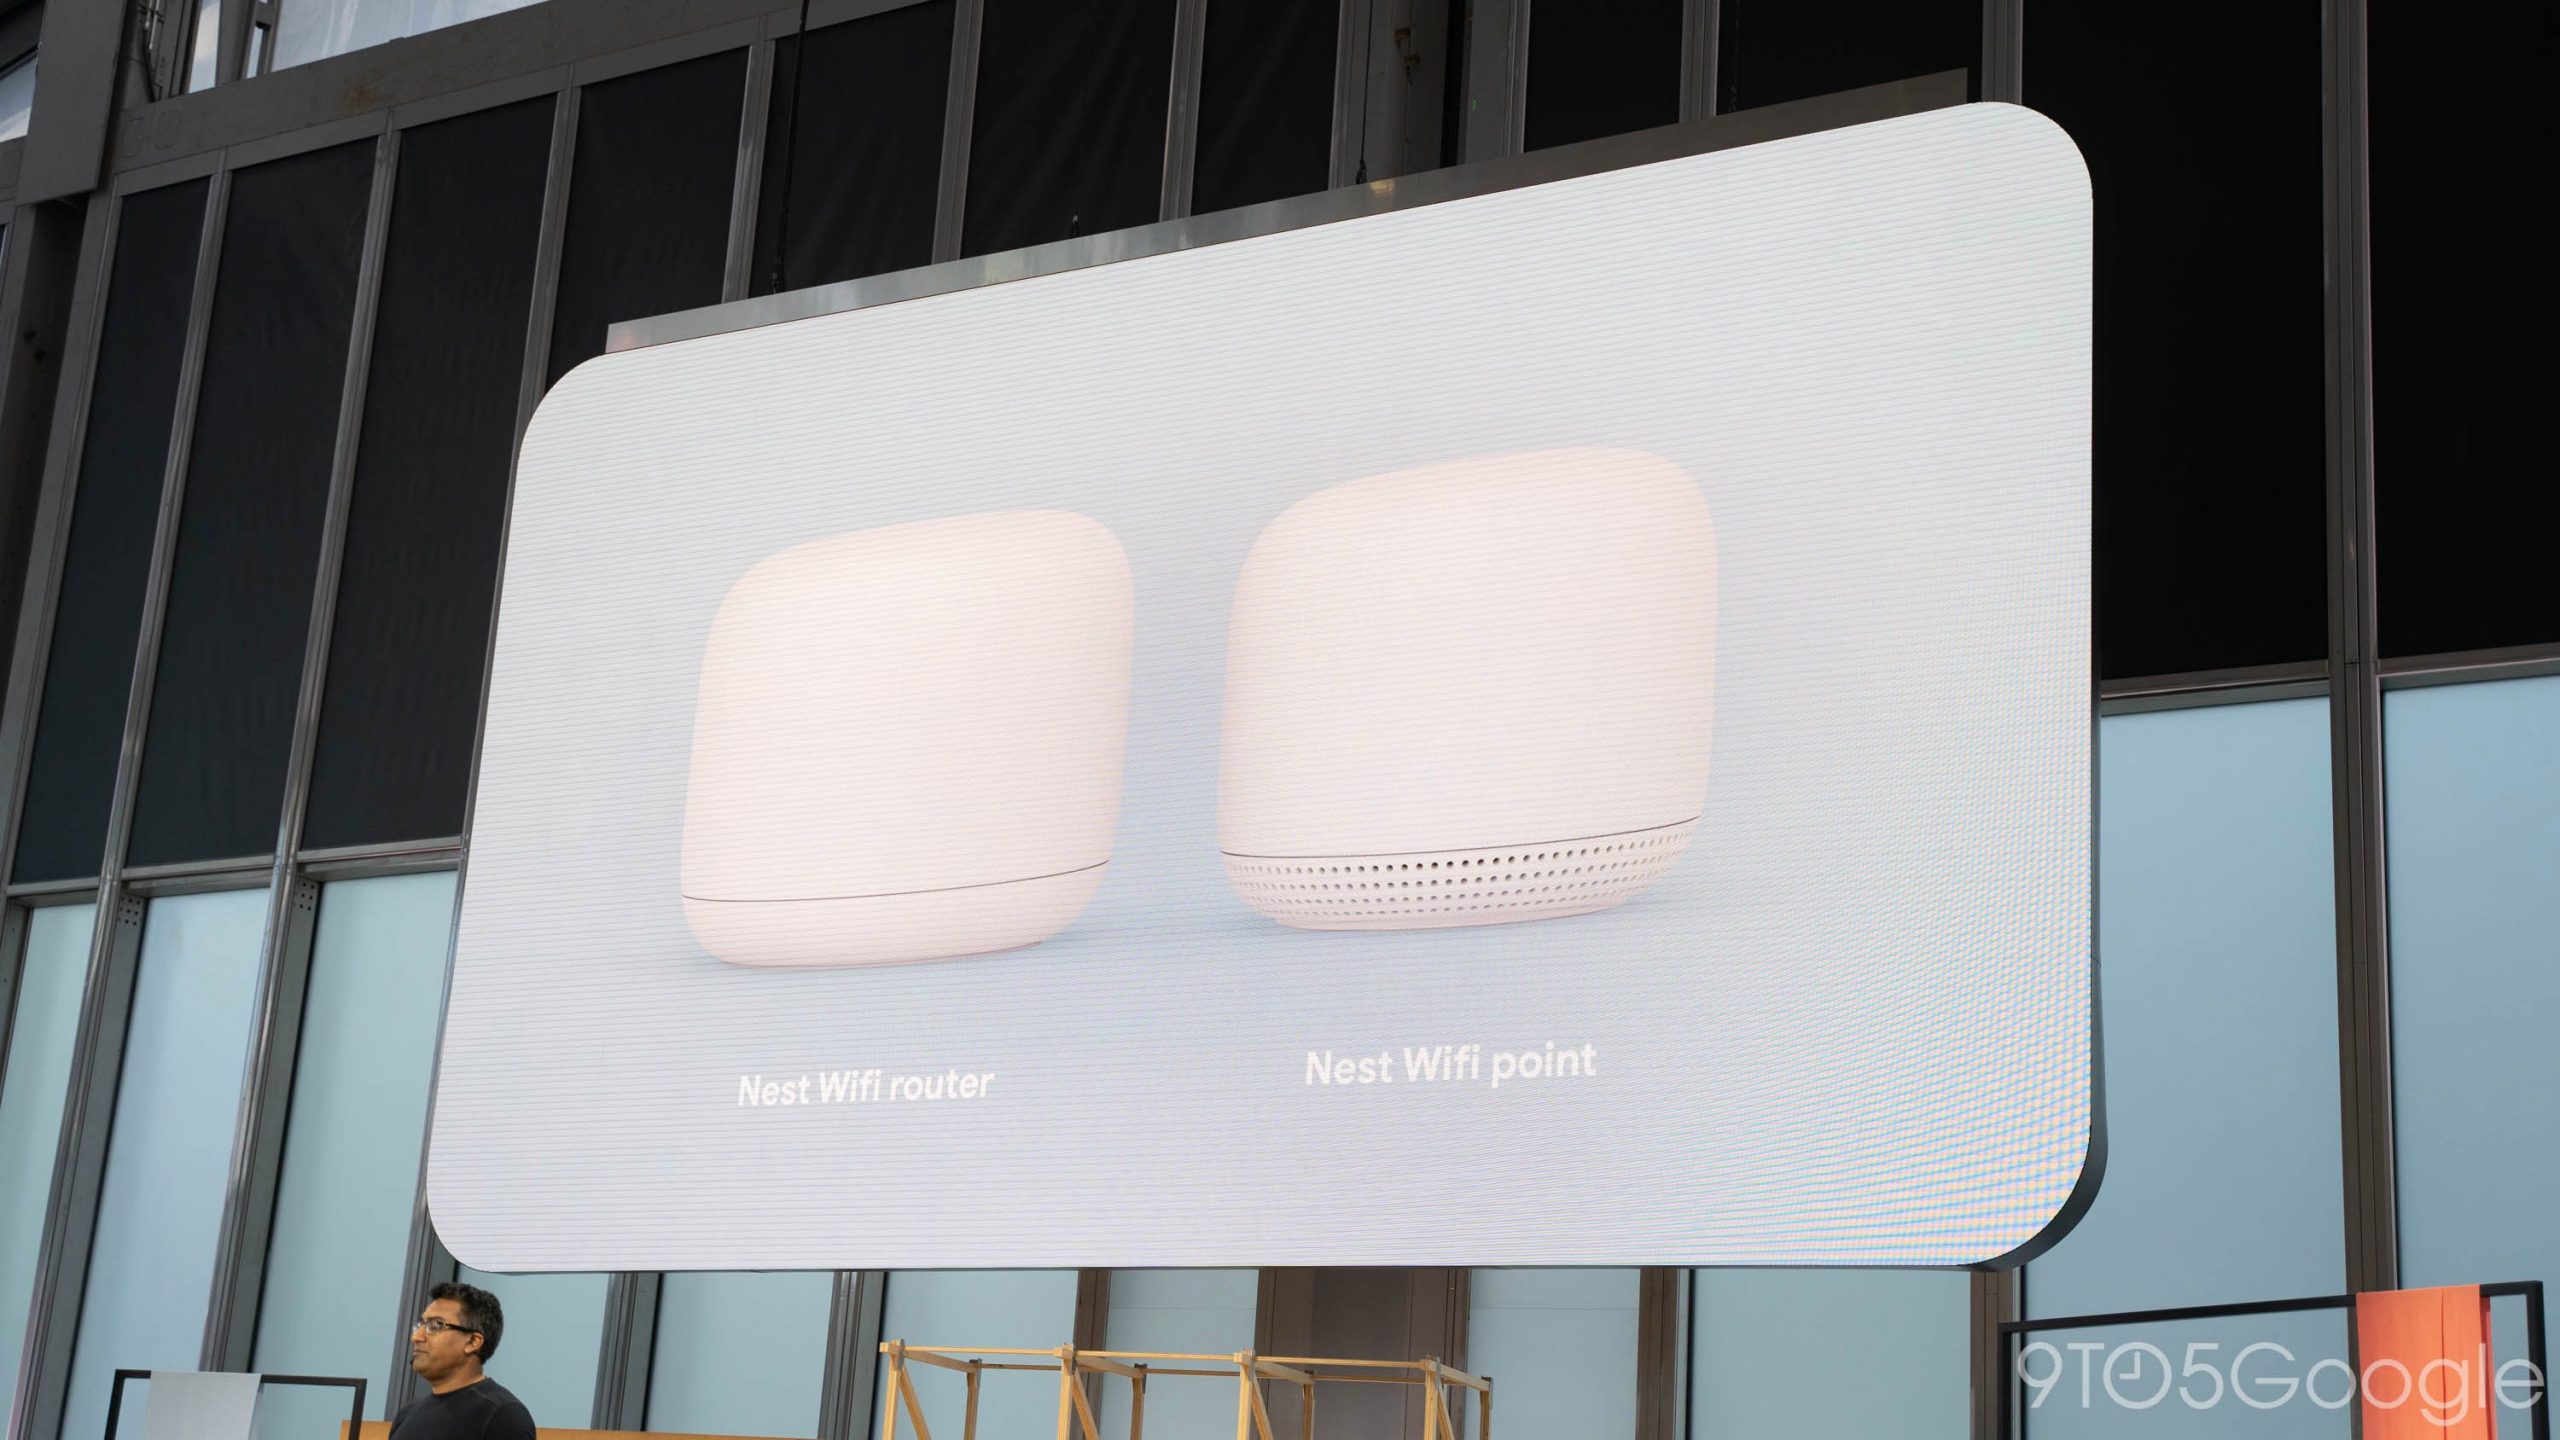 Google lança Nest Wifi Router e 'Point' com alto-falante assistente incorporado